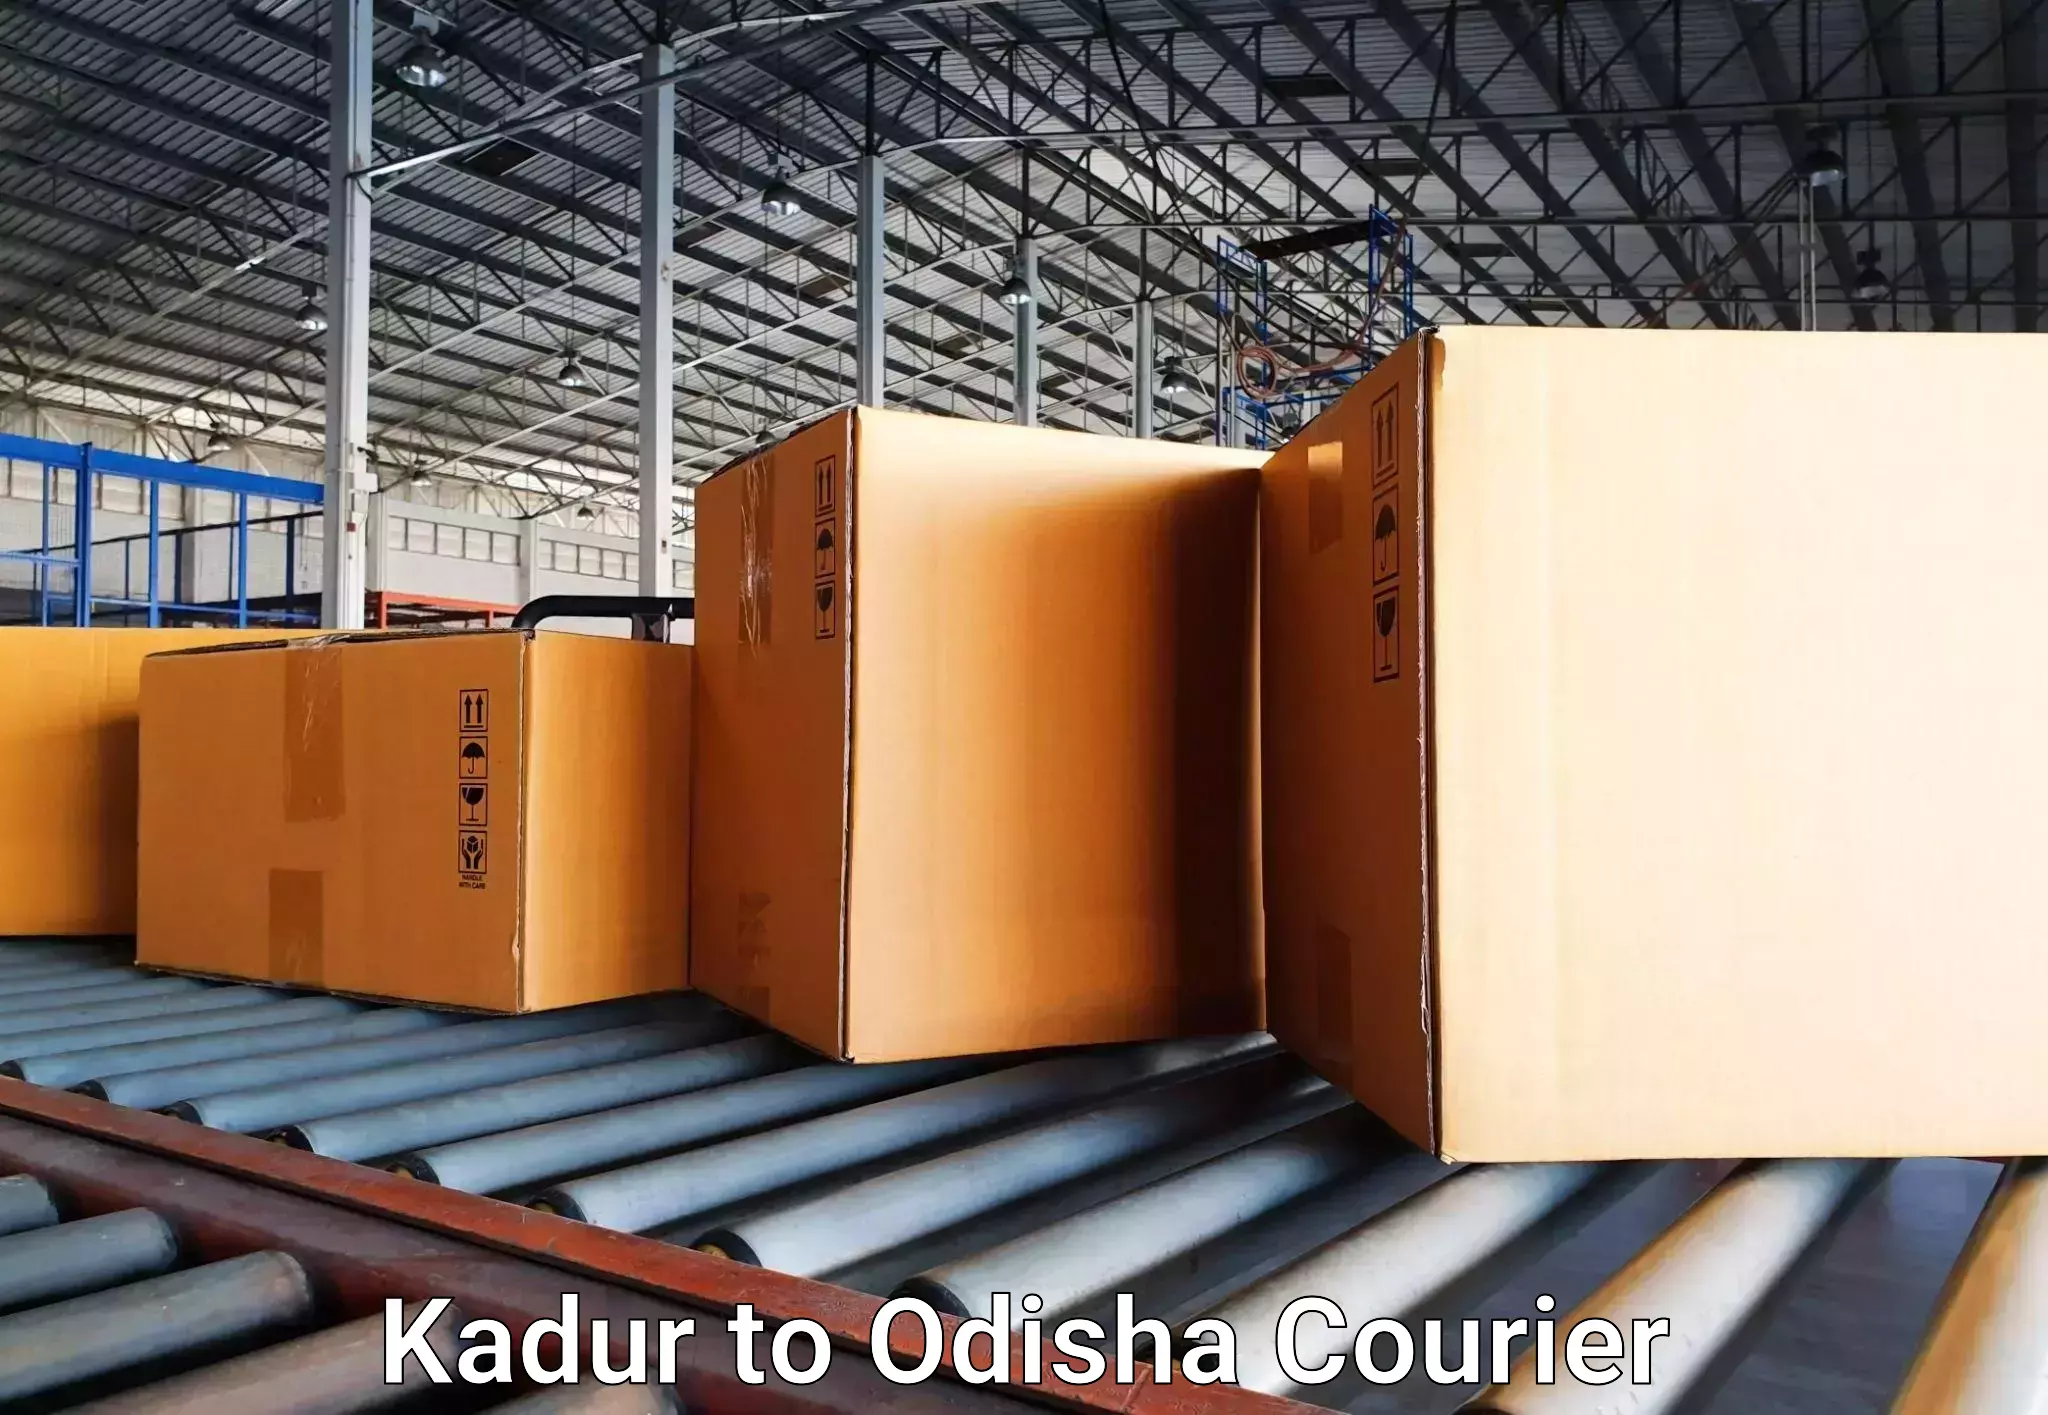 Online luggage shipping booking Kadur to Ukhunda